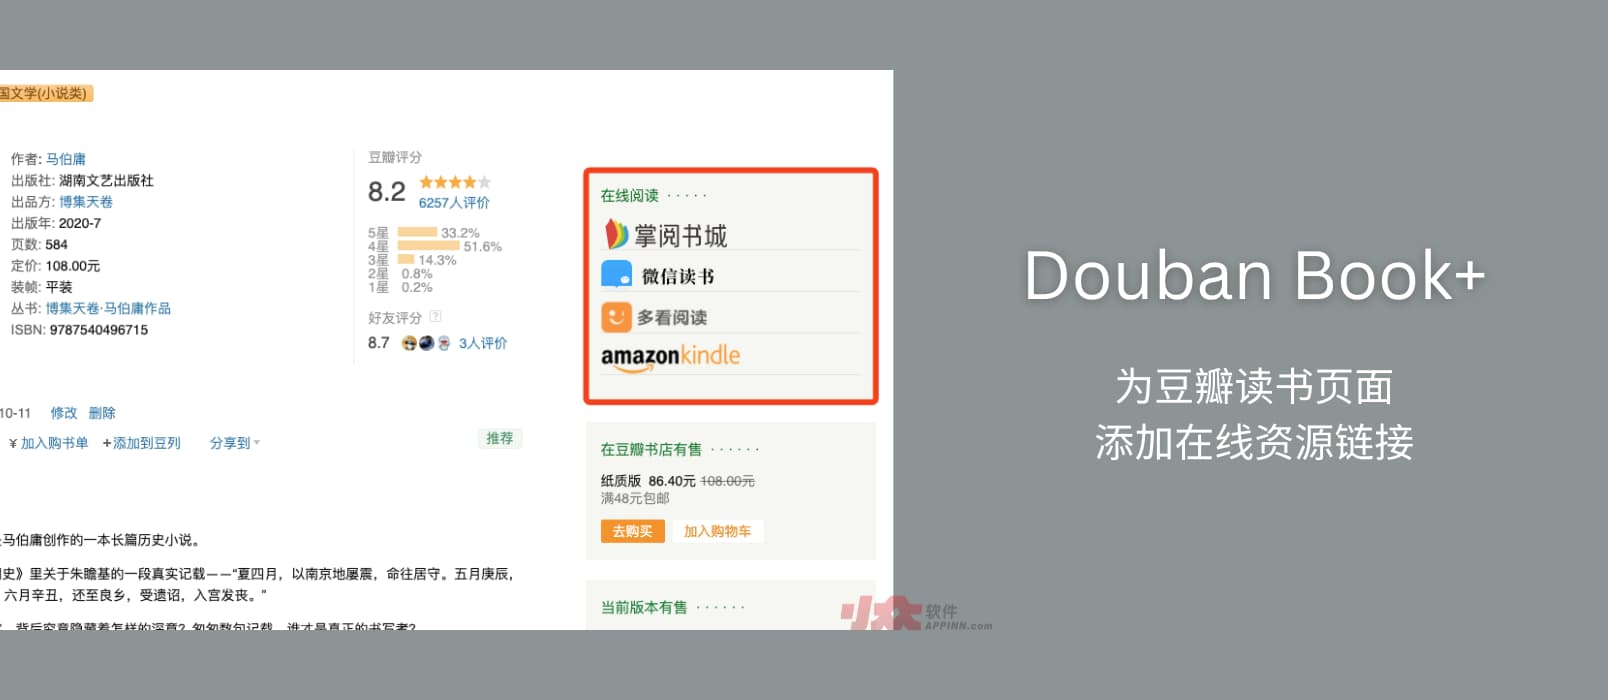 Douban Book+ - 为豆瓣读书页面添加微信读书、Kindle、多看、蜗牛等在线资源链接